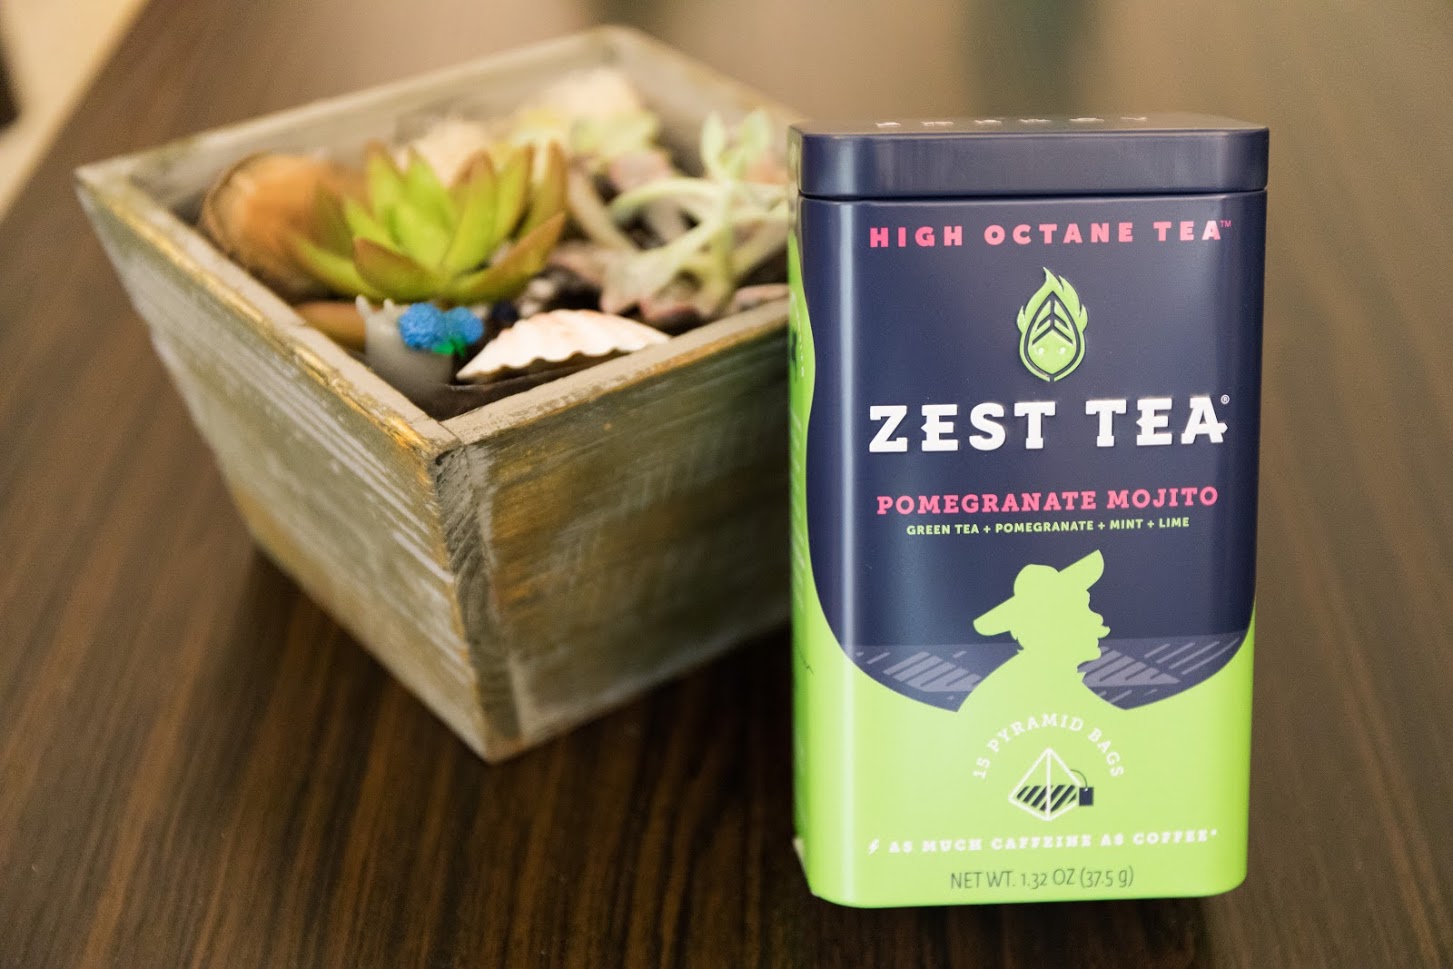 Zest Tea, Tea Review, Tea